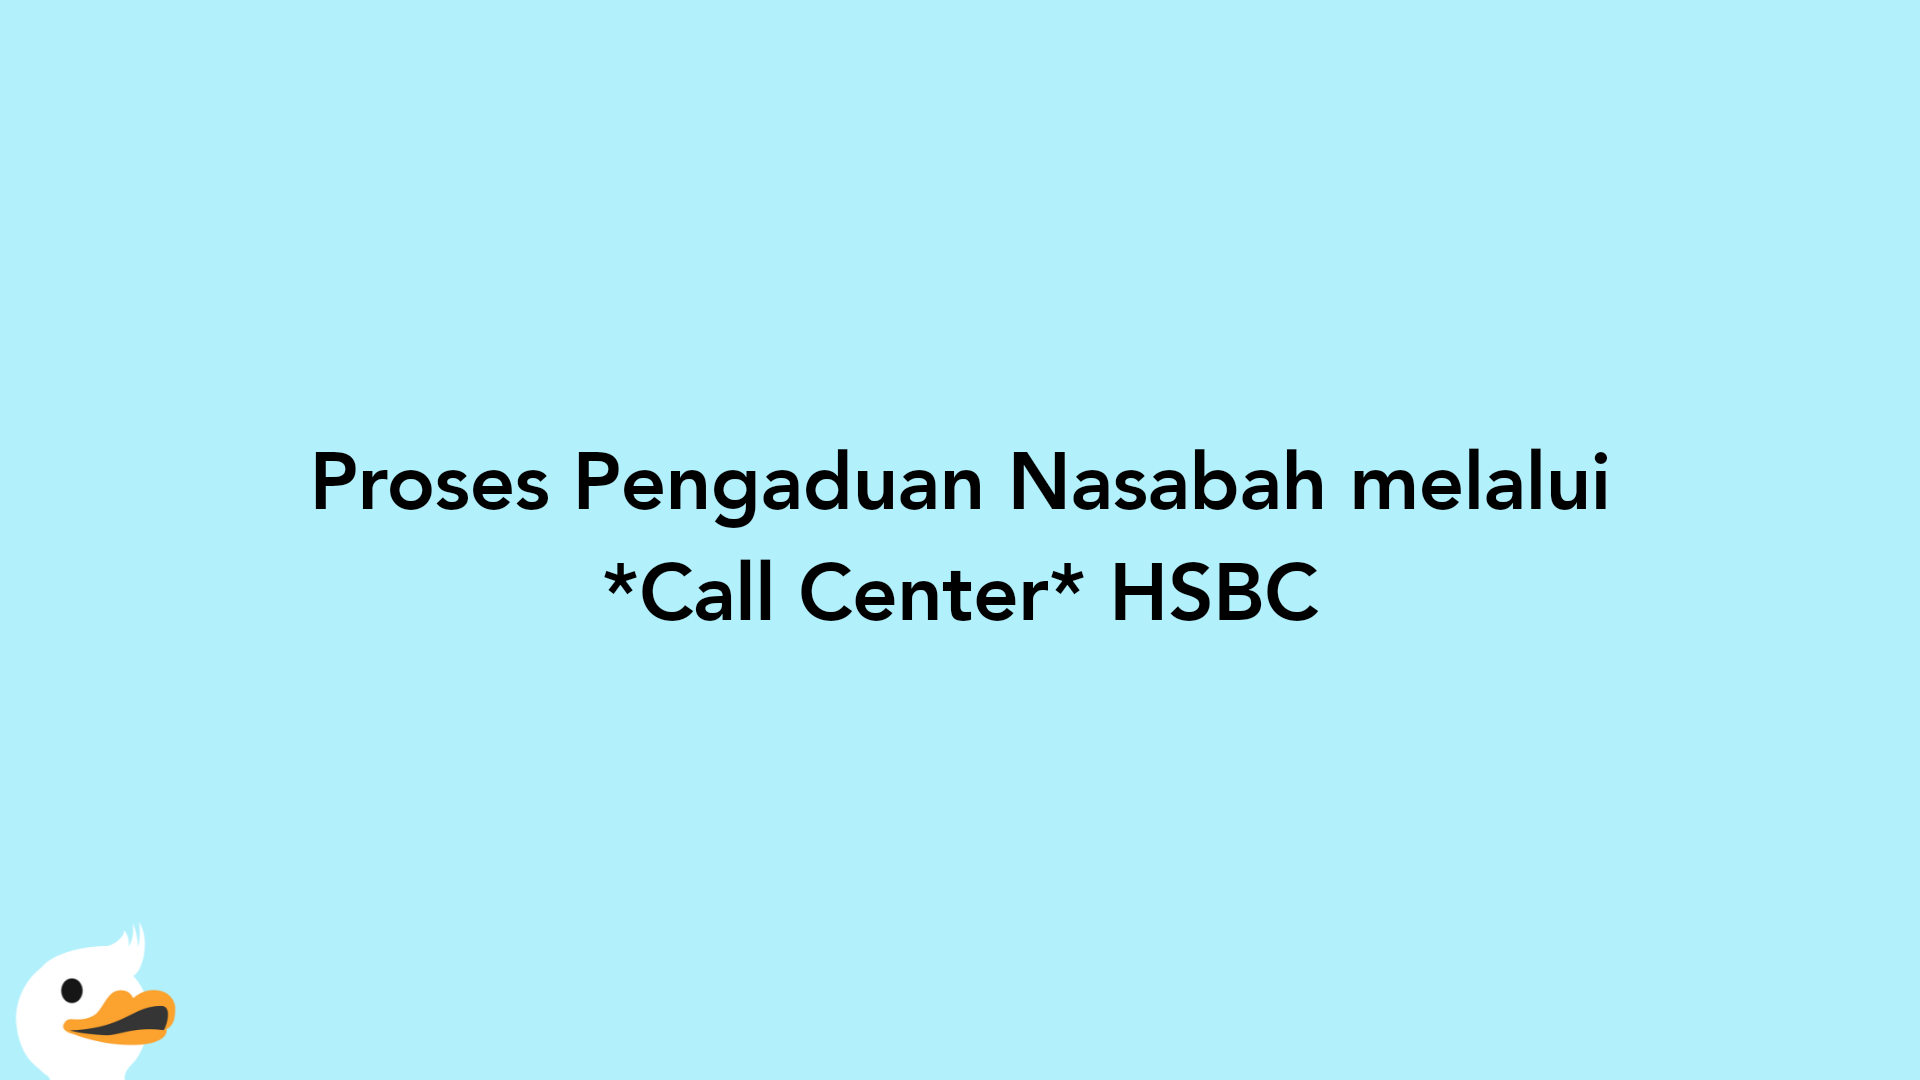 Proses Pengaduan Nasabah melalui Call Center HSBC